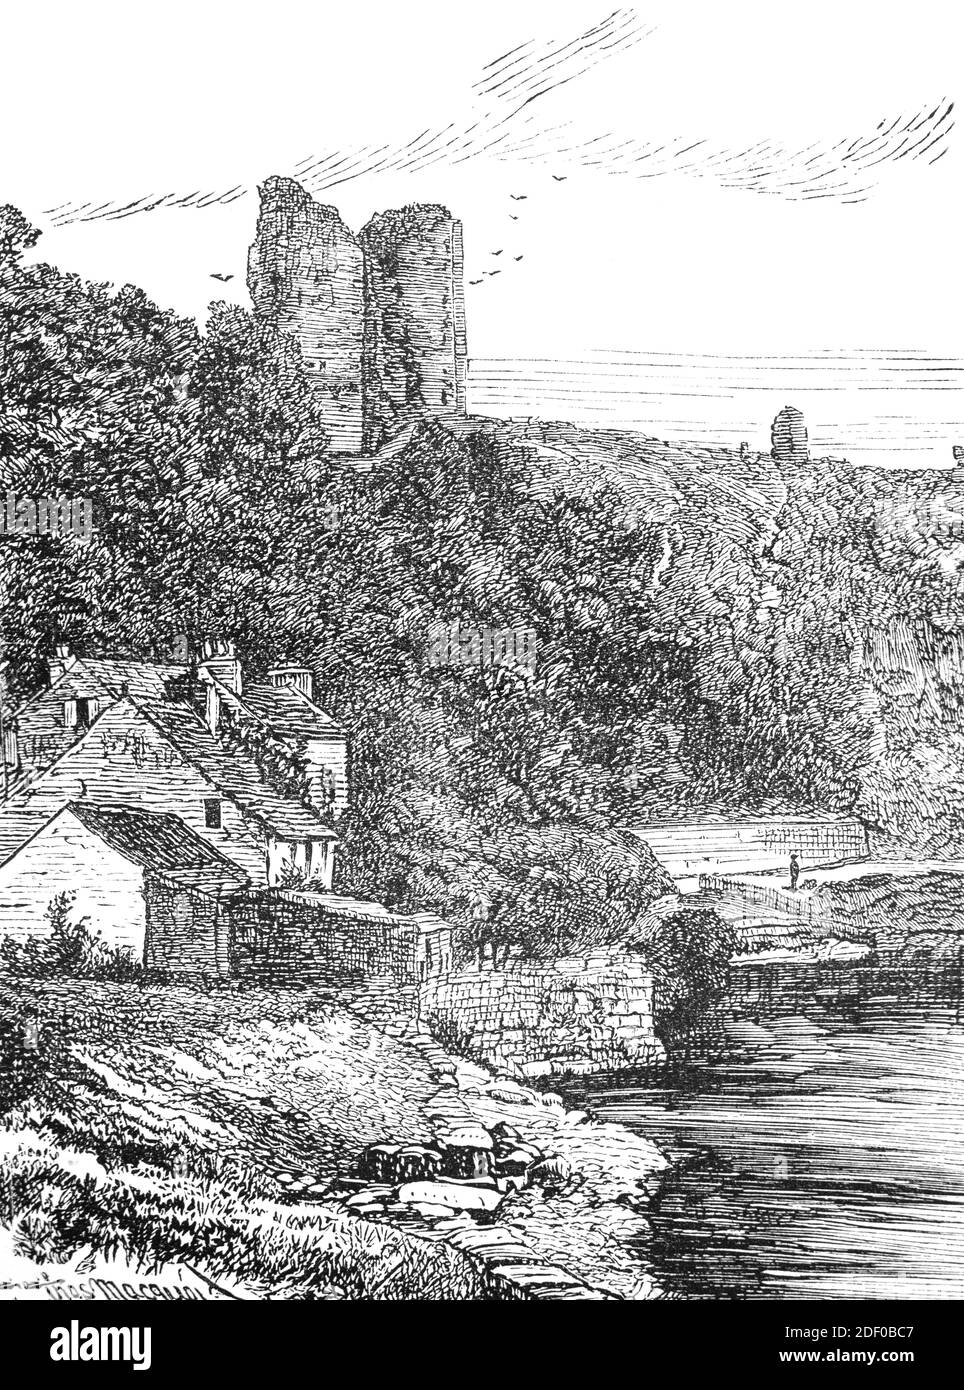 Una vista del 19 ° secolo del Castello di Knaresborough, una fortezza in rovina costruita per la prima volta da un barone normanno nel c. 1100 su una scogliera sopra il fiume Nidd nella città di Knaresborough, North Yorkshire, Inghilterra. Il castello fu ricostruito tra il 1307 e il 1312 da Edoardo i e successivamente completato da Edoardo II, compreso il grande castello. Philippa di Hainault prese possesso del castello nel 1331, e suo figlio, Giovanni di Gaunt acquistò il castello nel 1372, aggiungendolo alle vaste proprietà del Ducato di Lancaster. Il castello fu preso dalle truppe parlamentari nel 1644 durante la guerra civile, e in gran parte distrutto nel 1648 perché Foto Stock